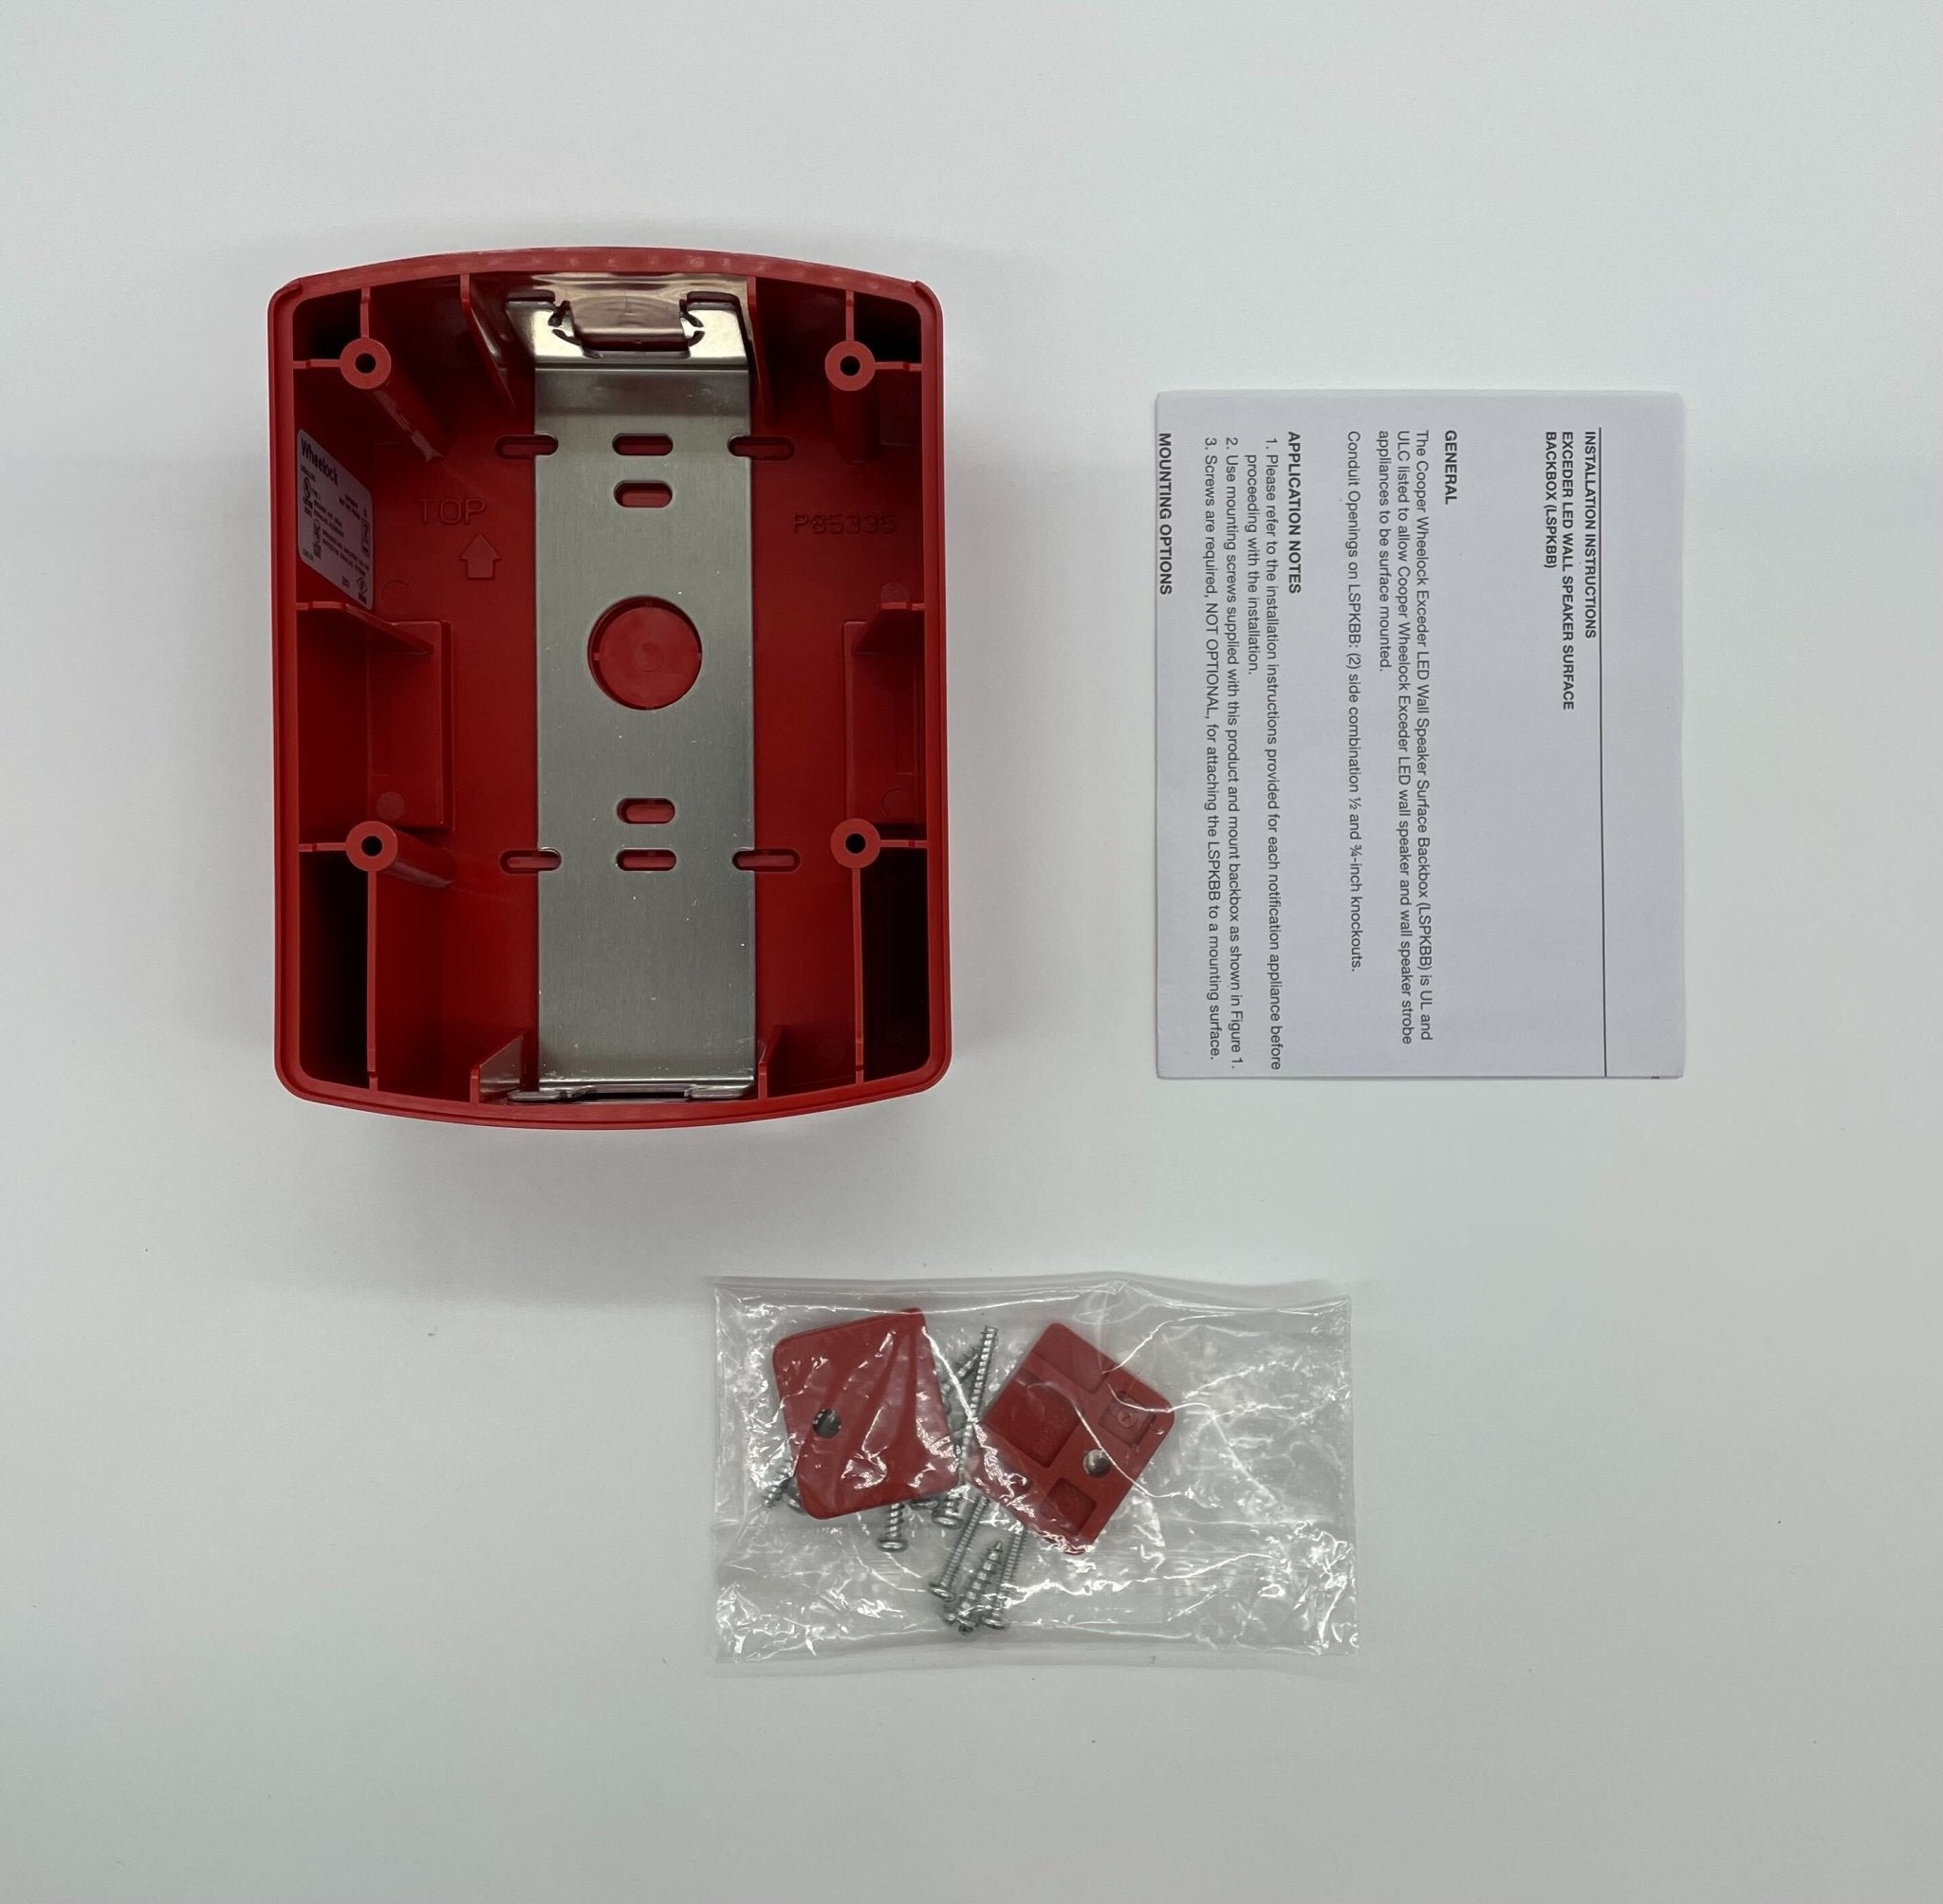 Wheelock LSPKBB-R - The Fire Alarm Supplier